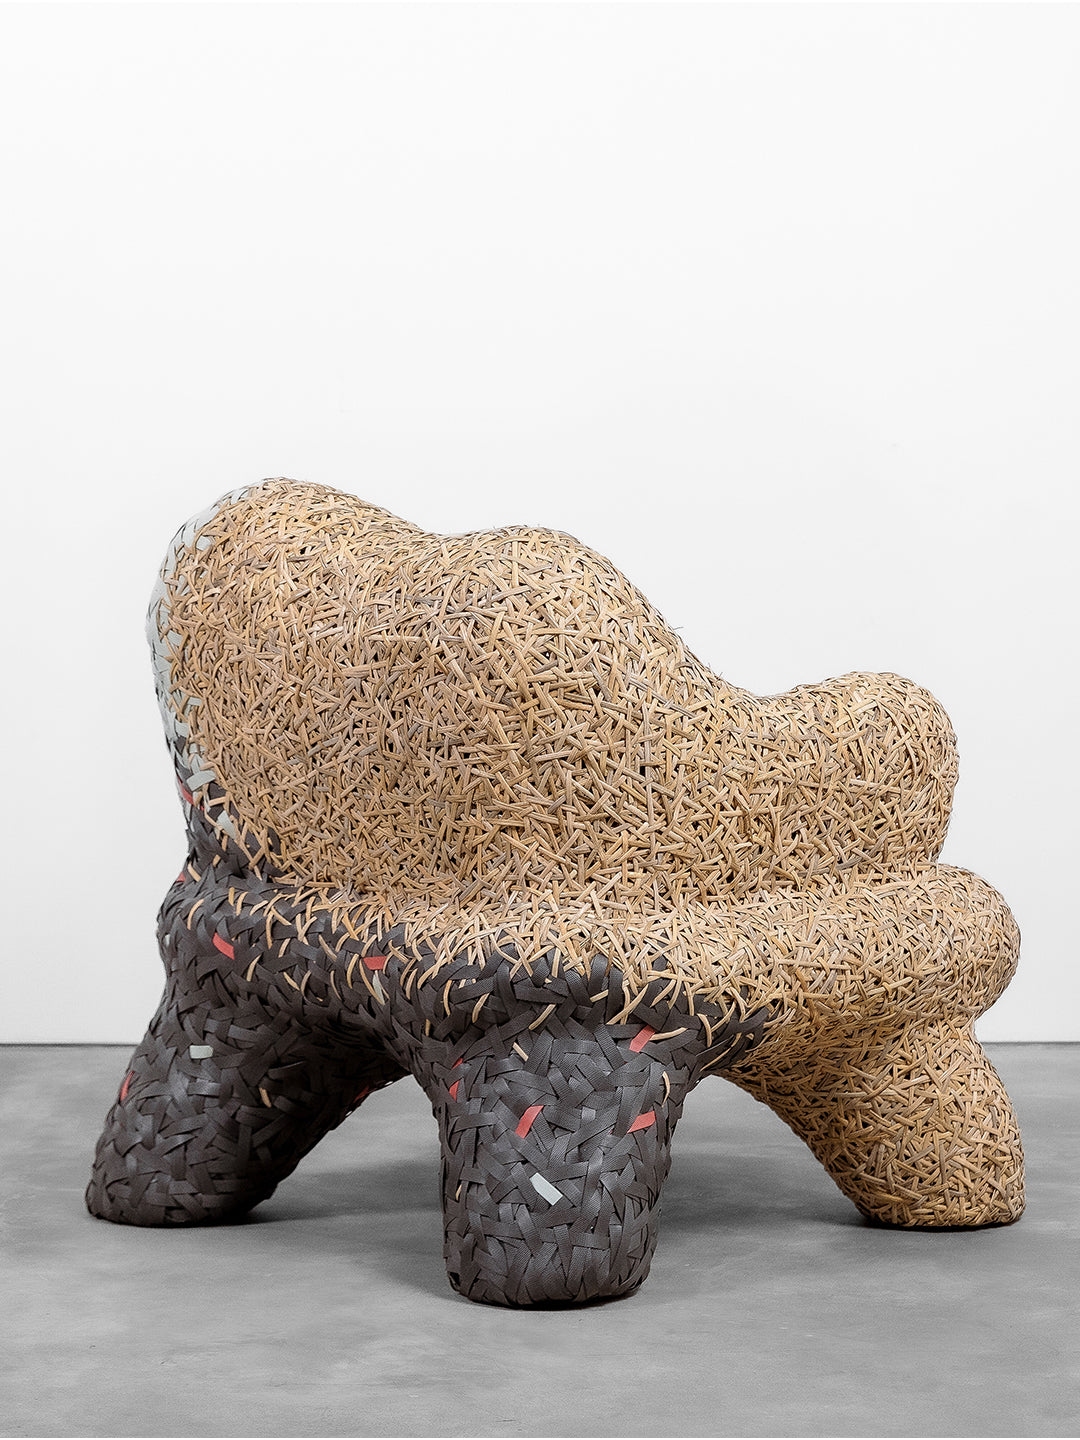 Artisanal Woven Chair Mix Rattan